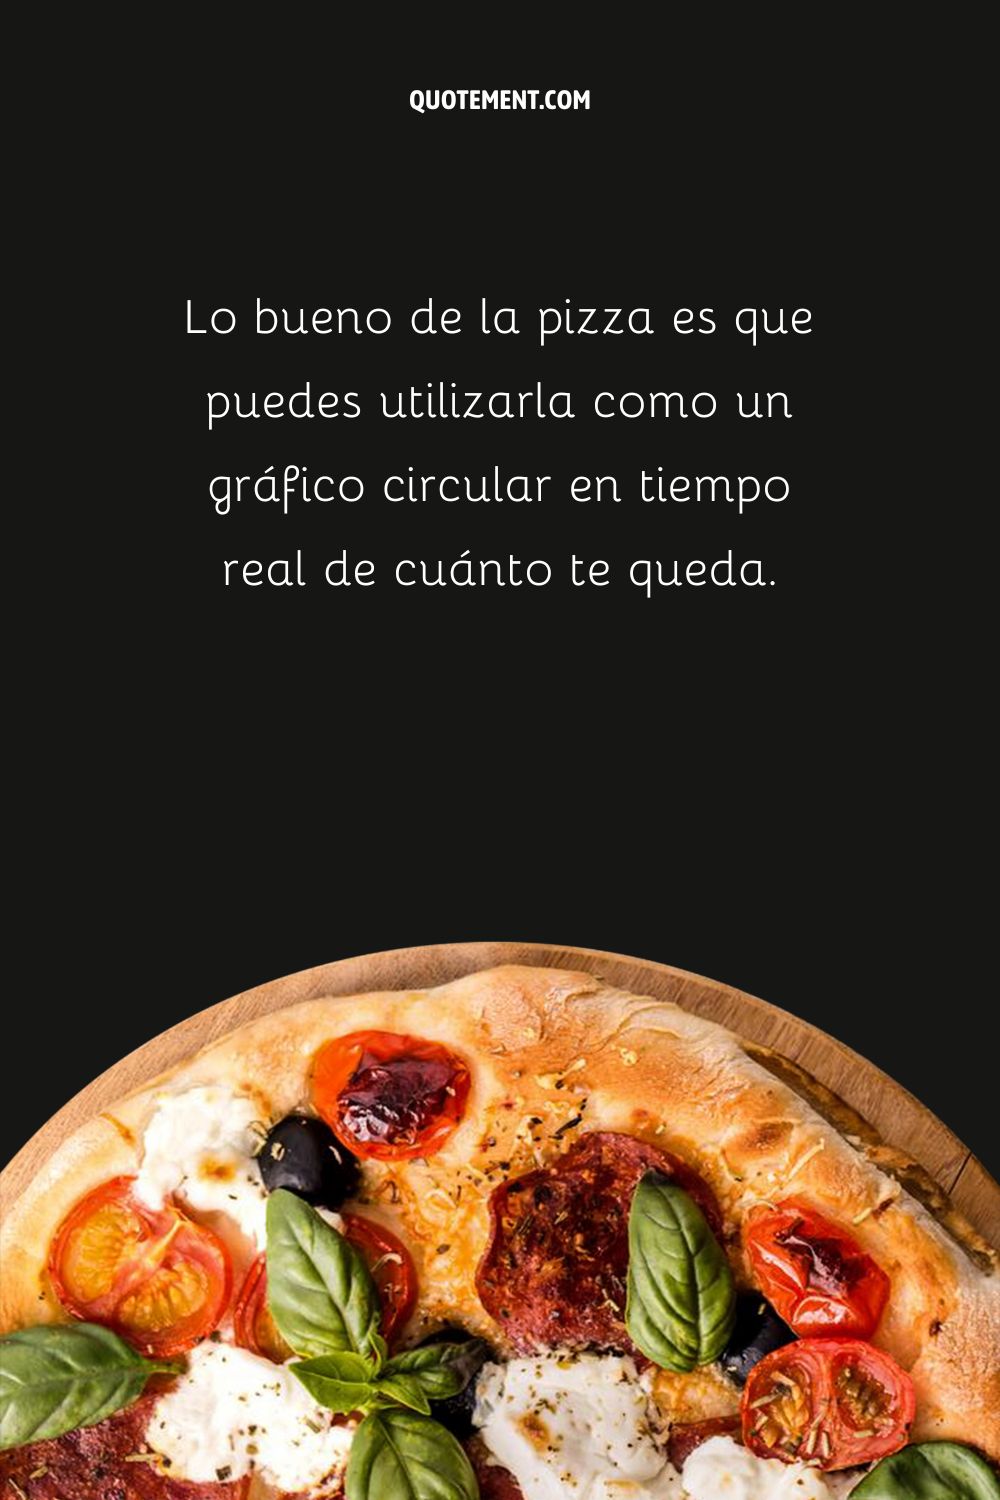 Lo bueno de la pizza es que puedes utilizarla como un gráfico circular en tiempo real de cuánto te queda